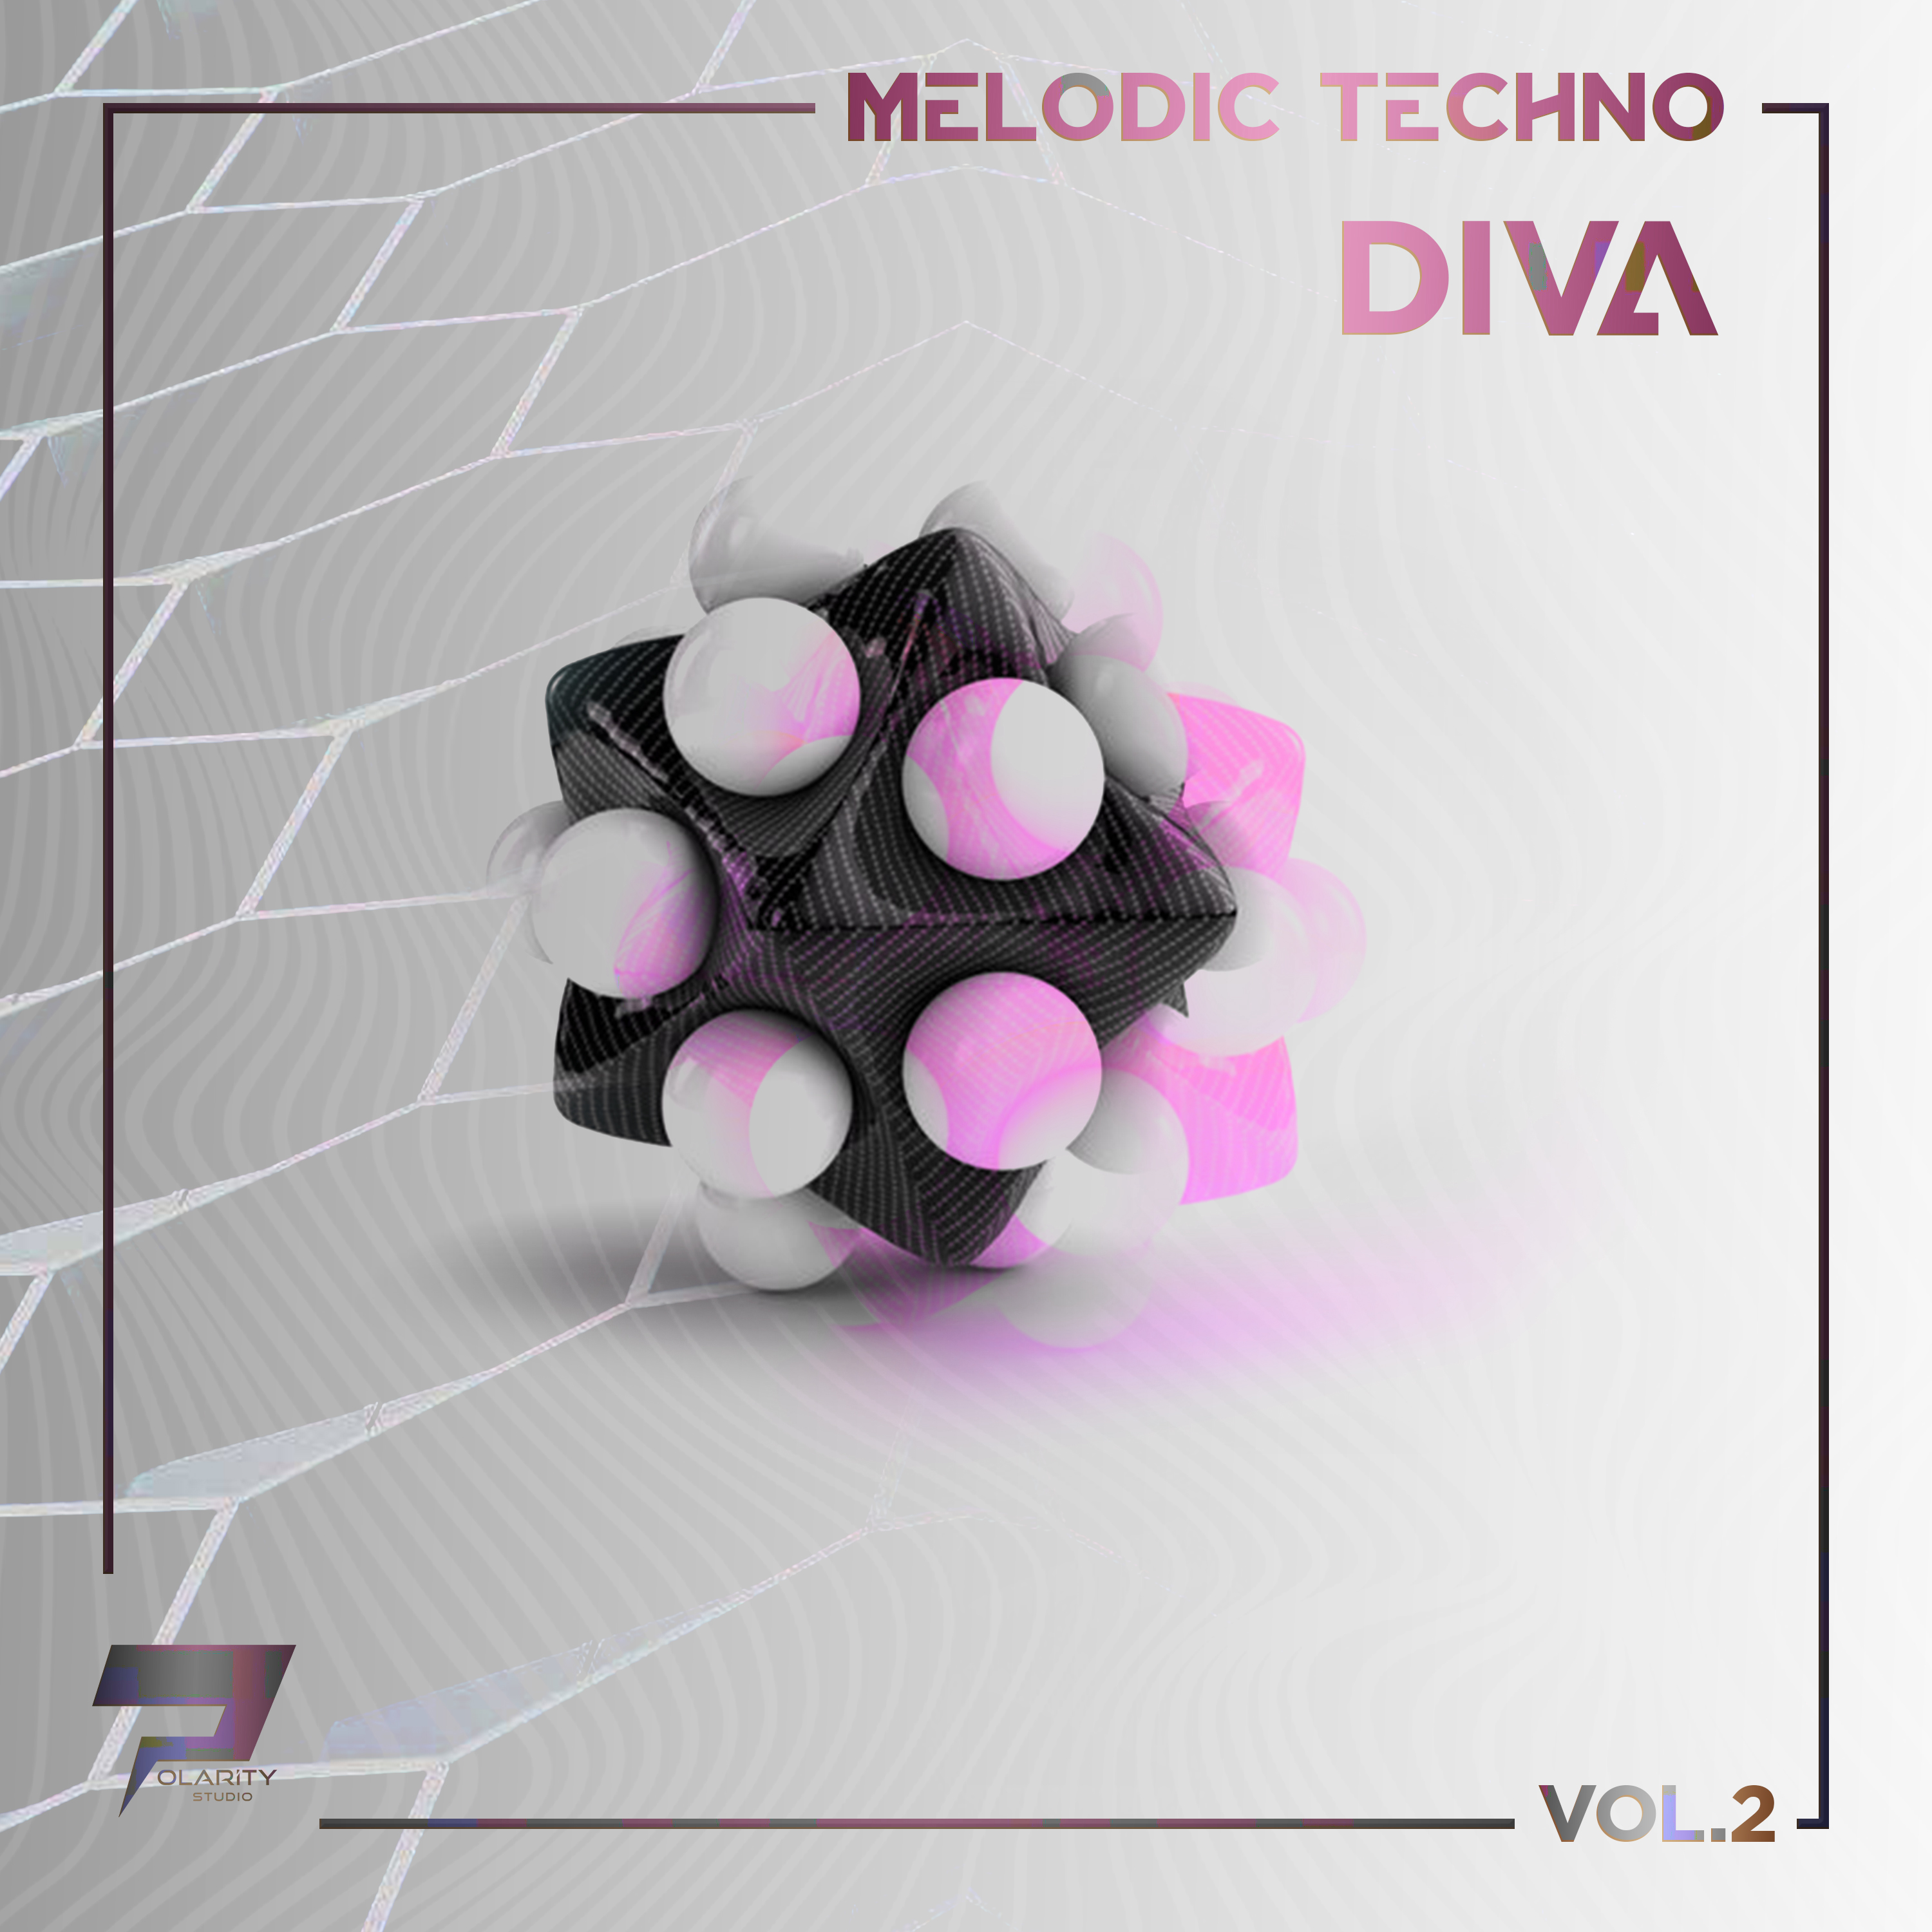 Polarity Studio - Melodic Techno - Diva Vol. 2